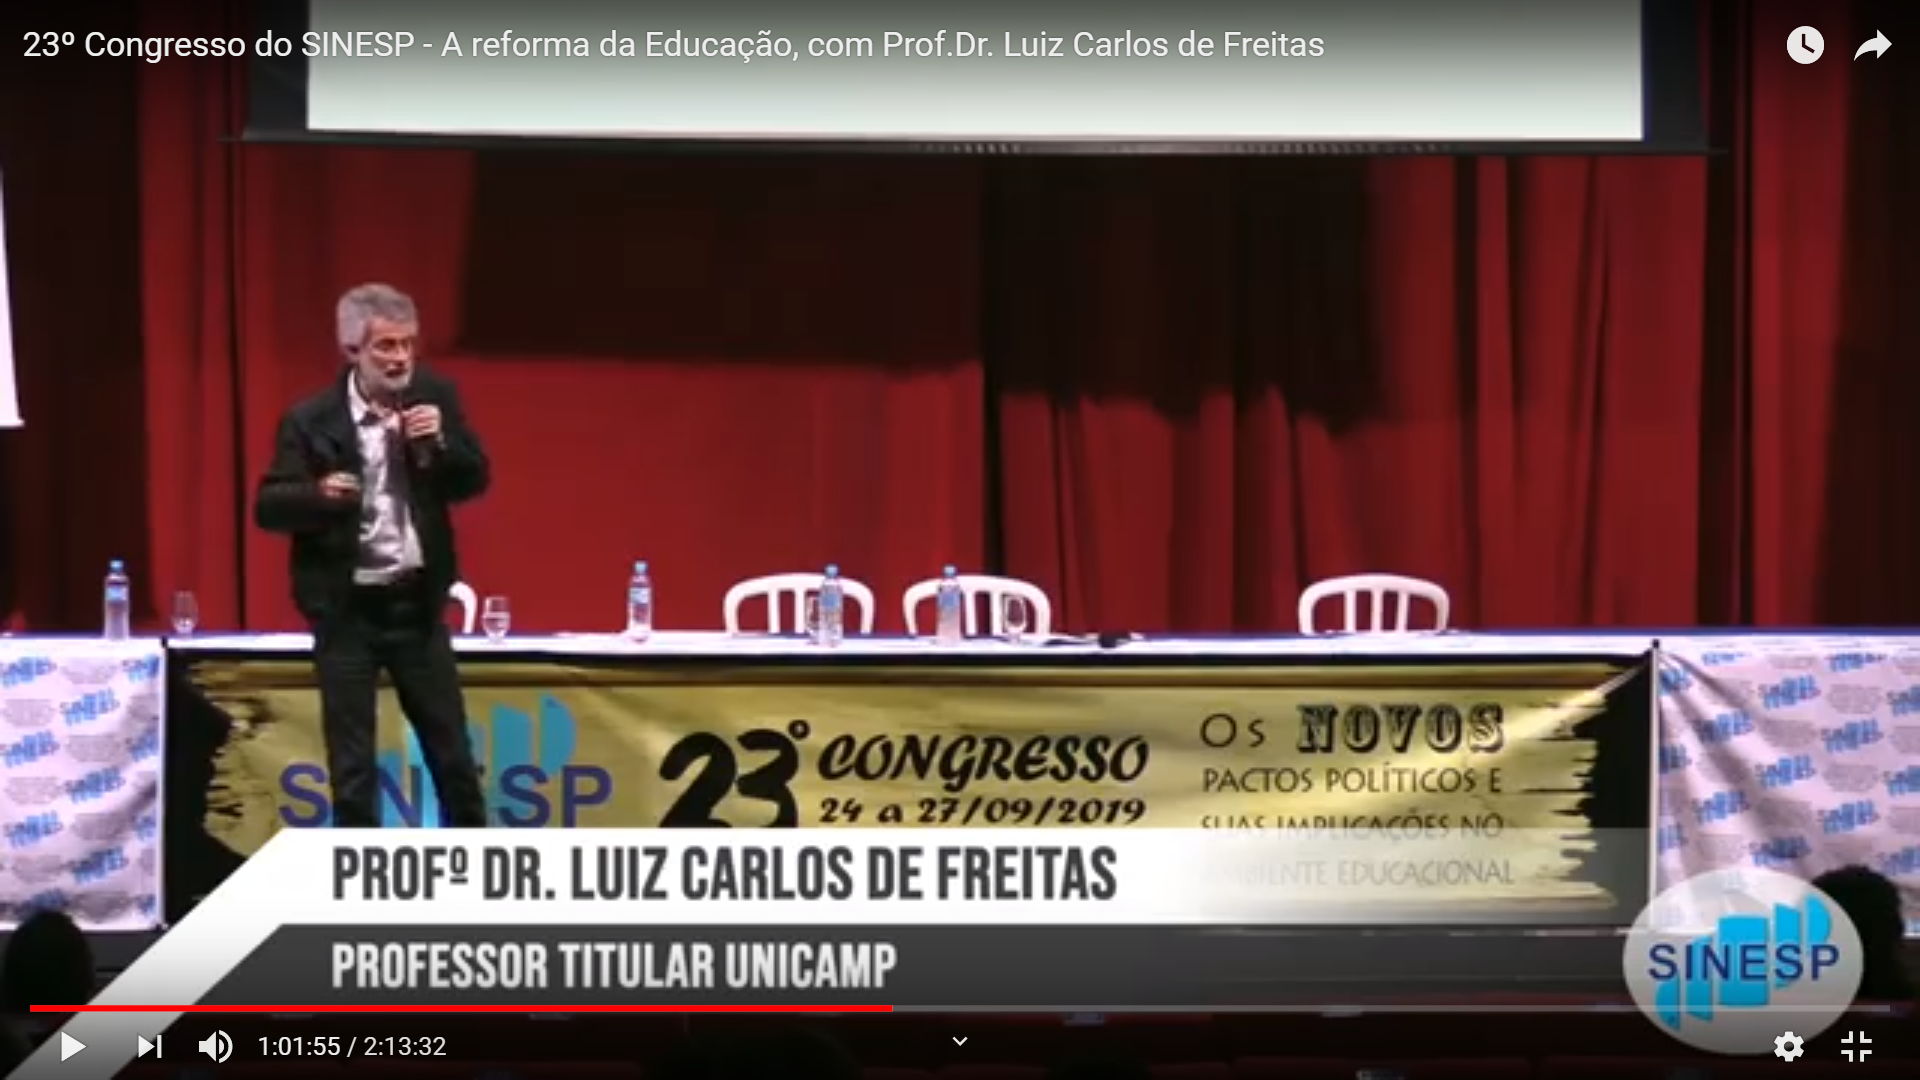 23º Congresso do SINESP - A reforma da Educação, com Prof.Dr. Luiz Carlos de Freitas